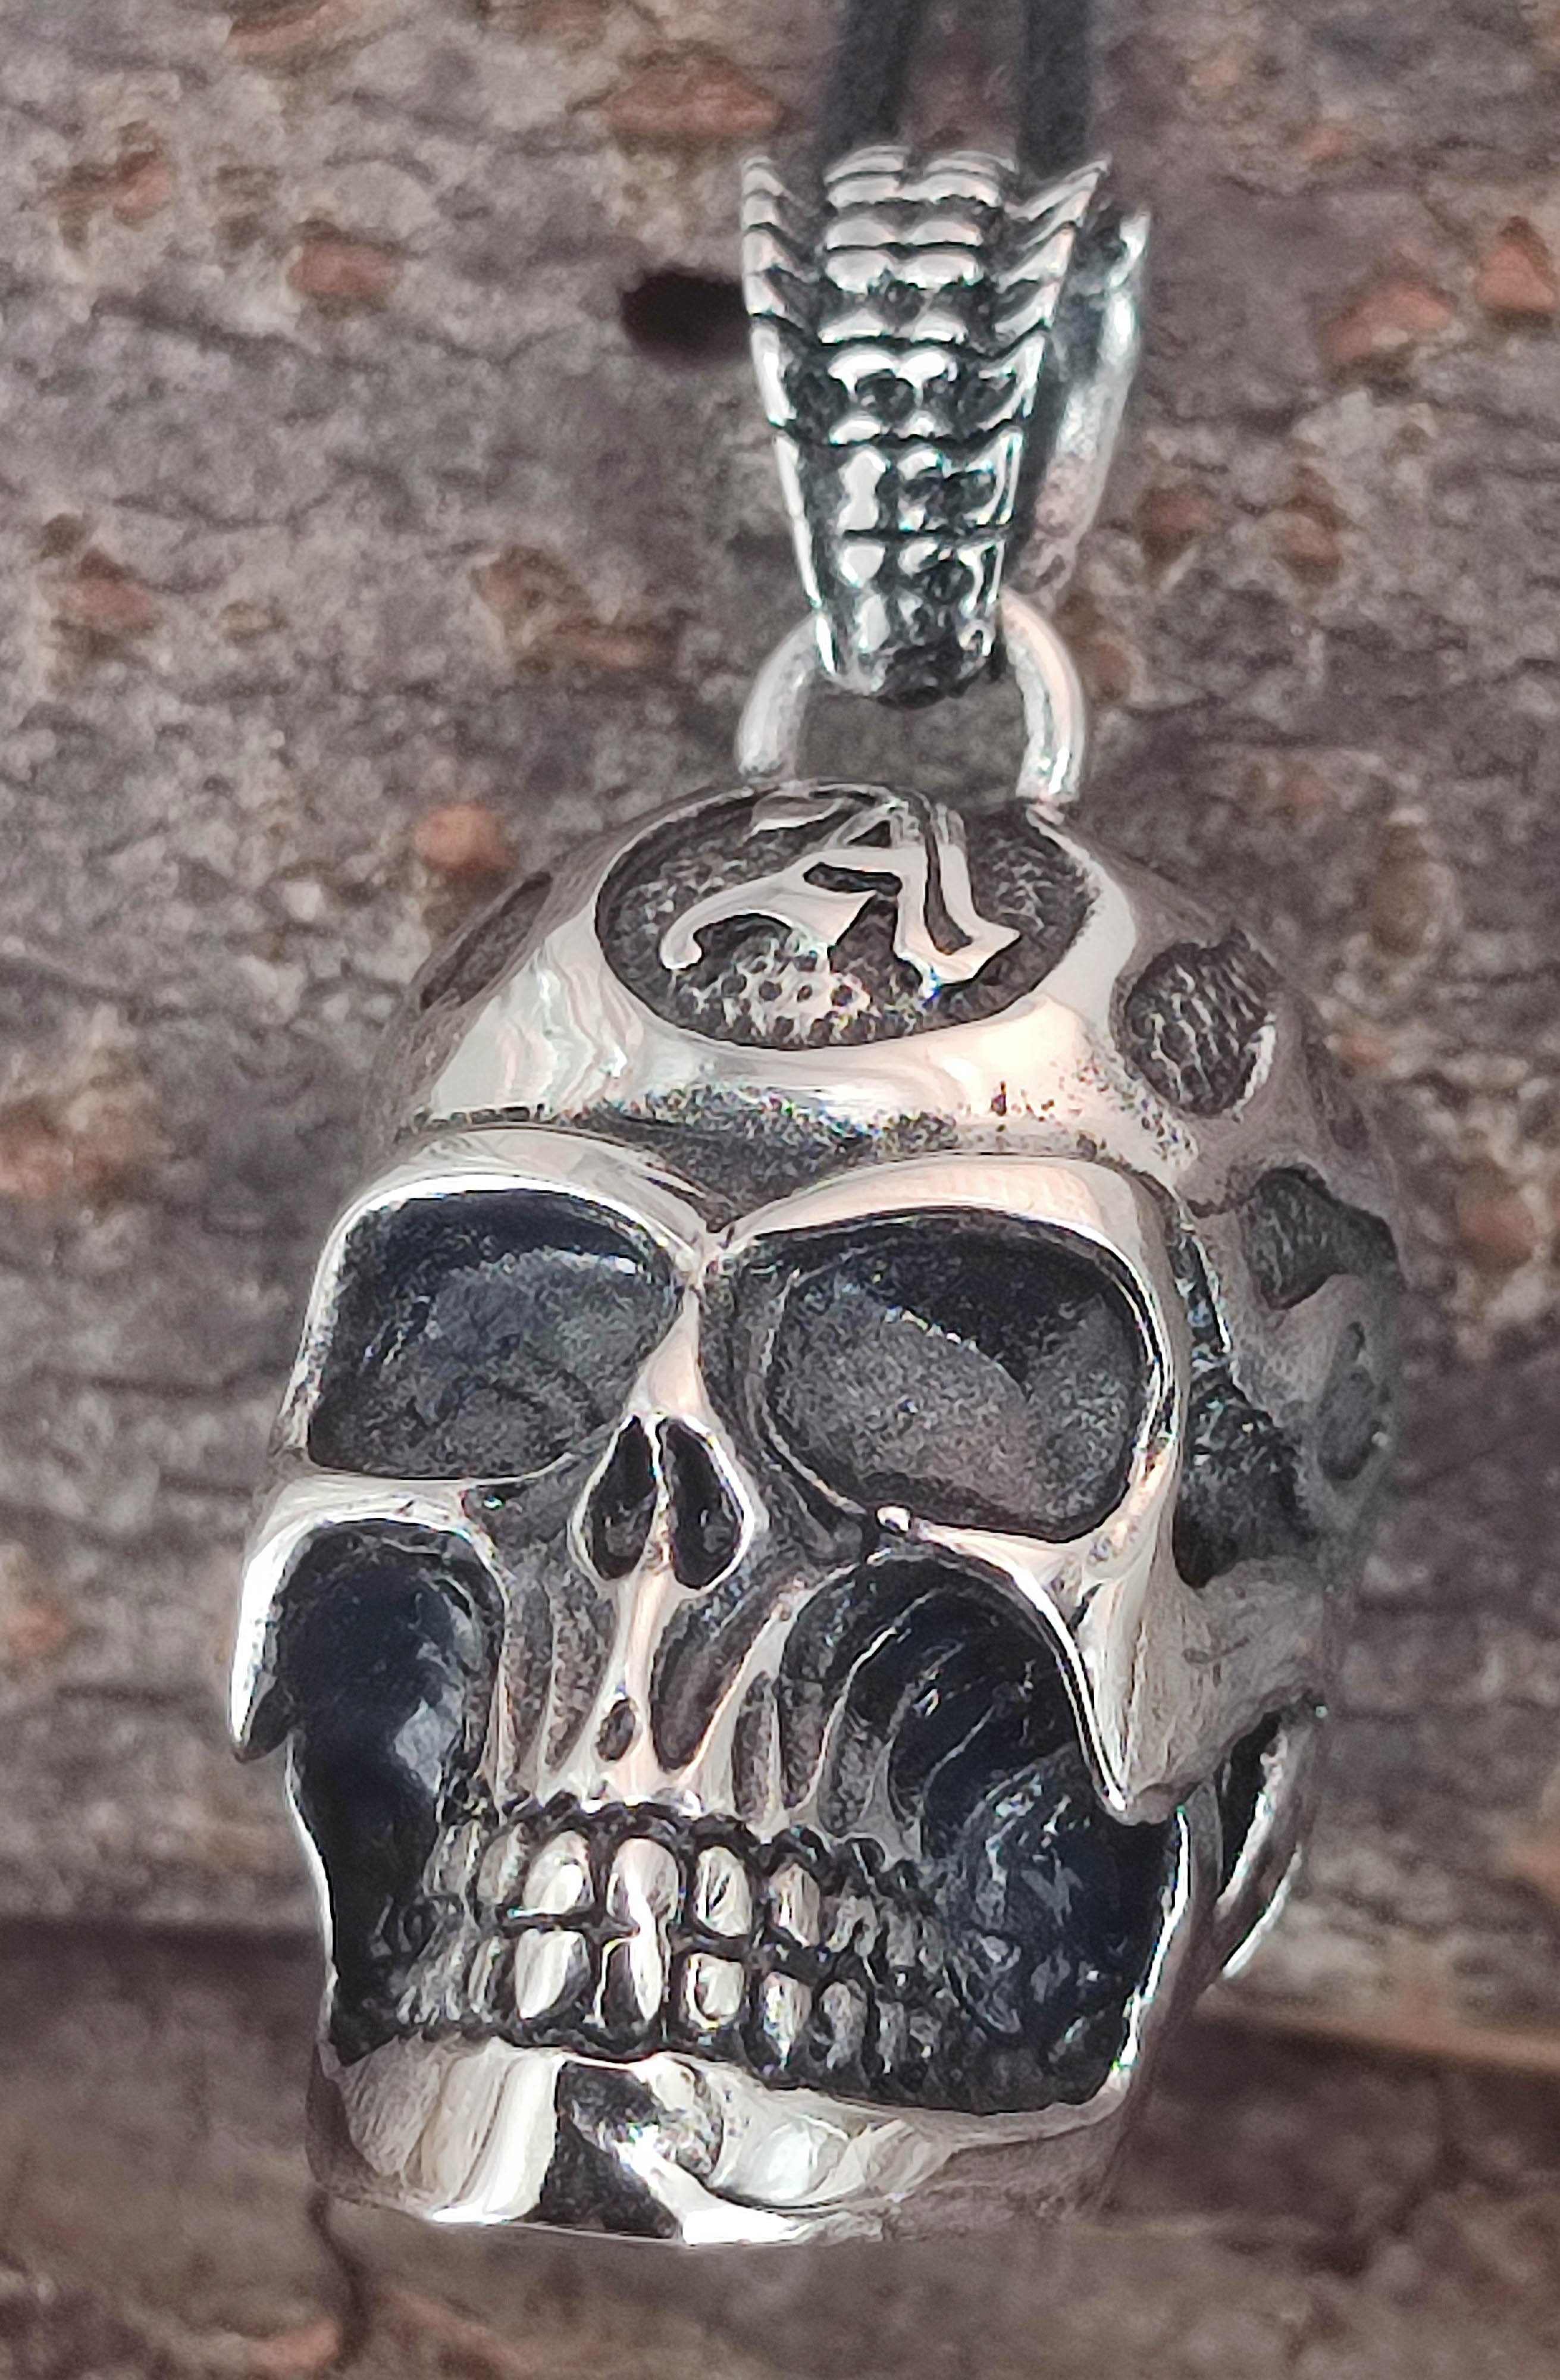 of Edelstahl großer Schädel Totenkopf Leather Kettenanhänger dreidimensional Skull Kiss Anhänger